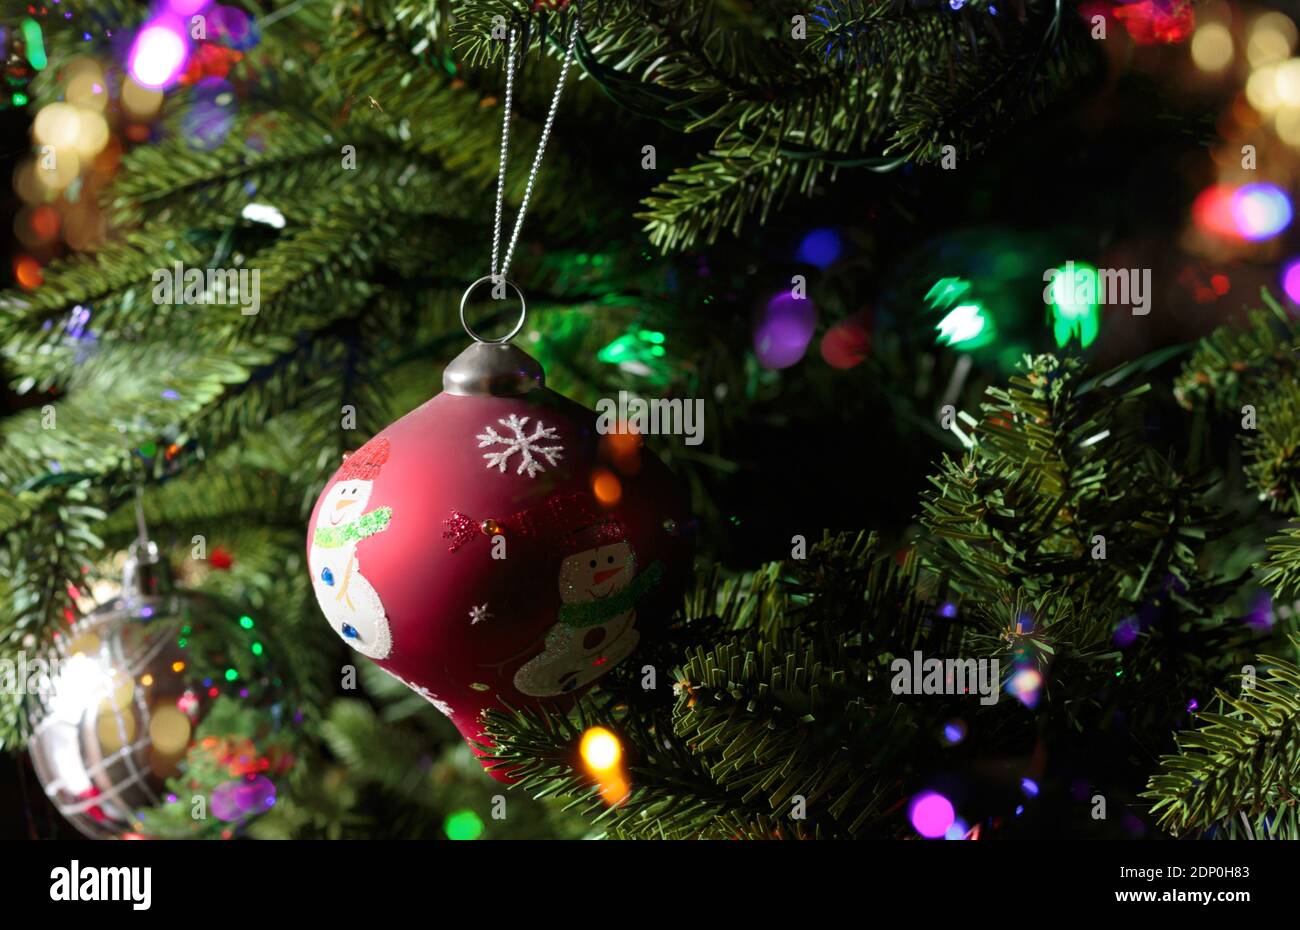 primo piano di un ornamento rosso dell'albero di natale con un pupazzo di neve appeso ad un albero di natale con luci bokeh scintillanti intorno Foto Stock